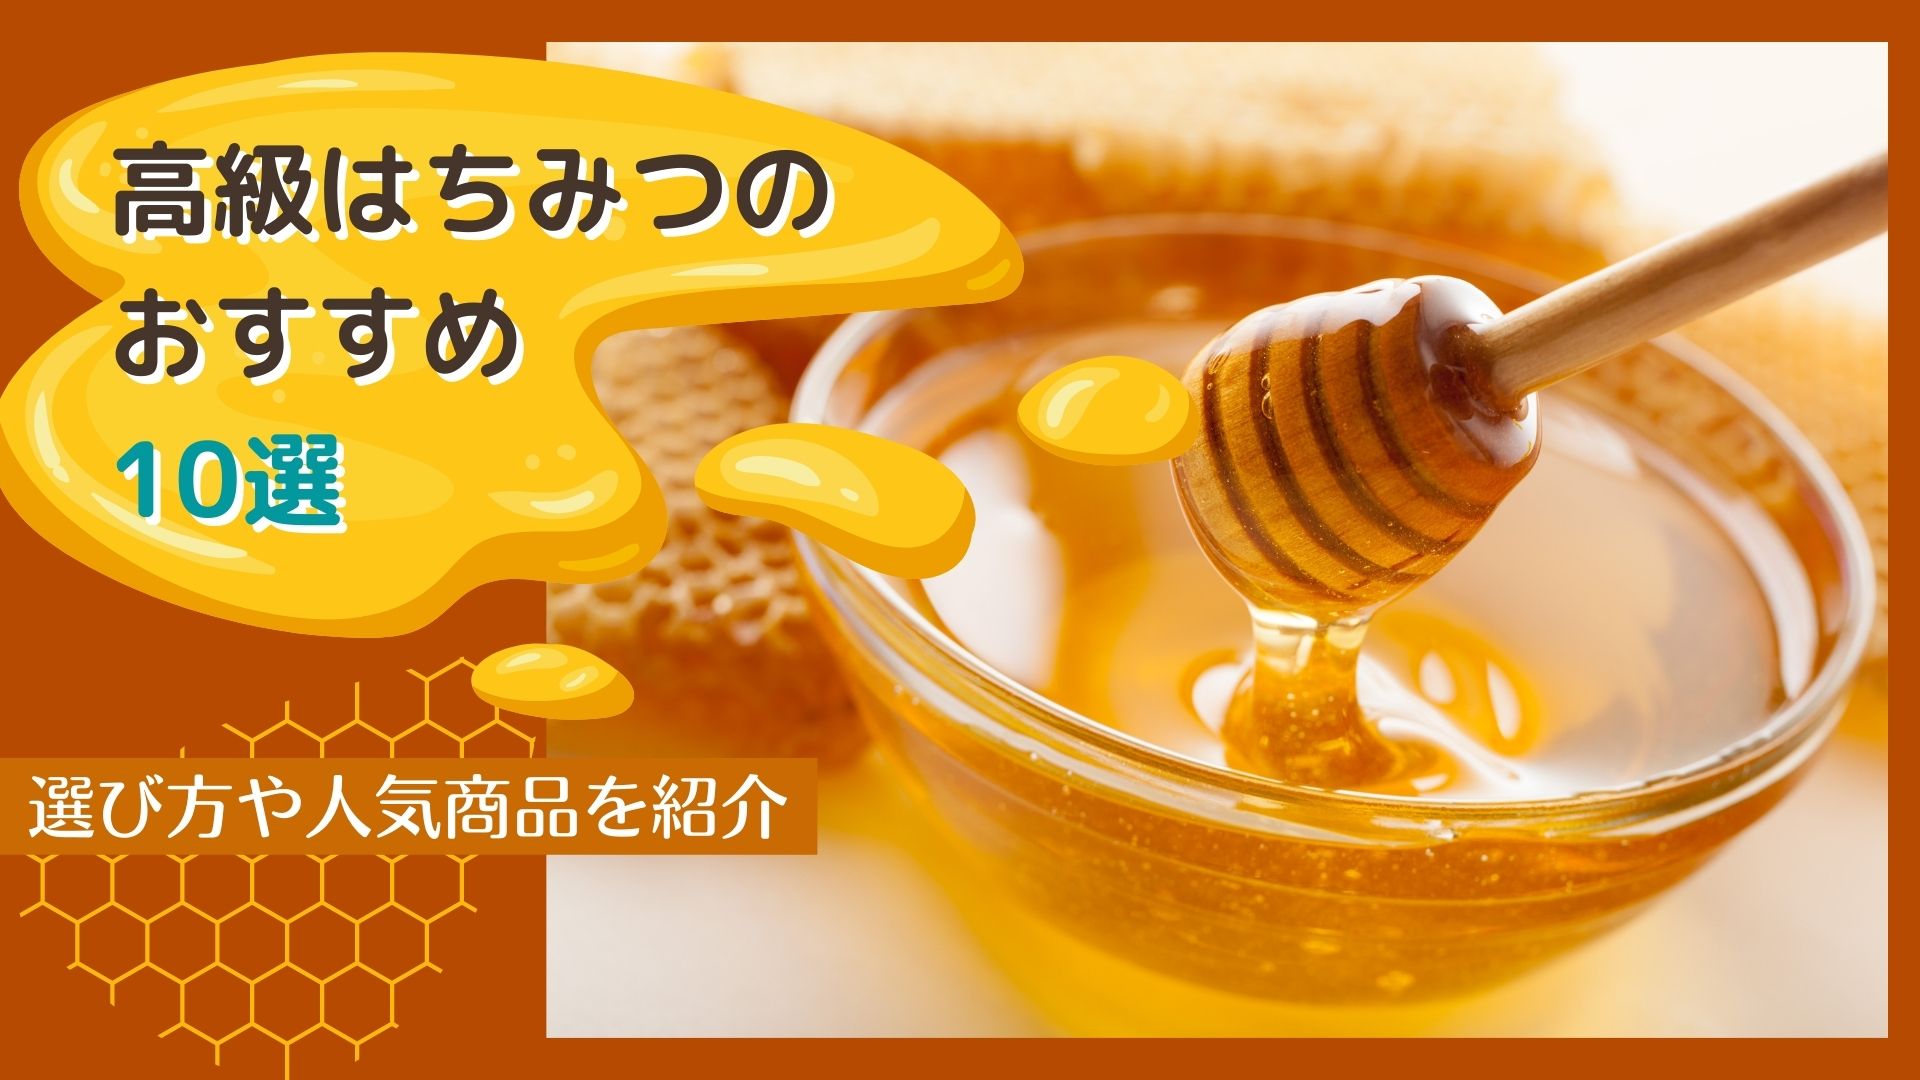 日本 蜜蜂 蜂蜜 百花蜜 天然 無農薬 逆さボトル 通販